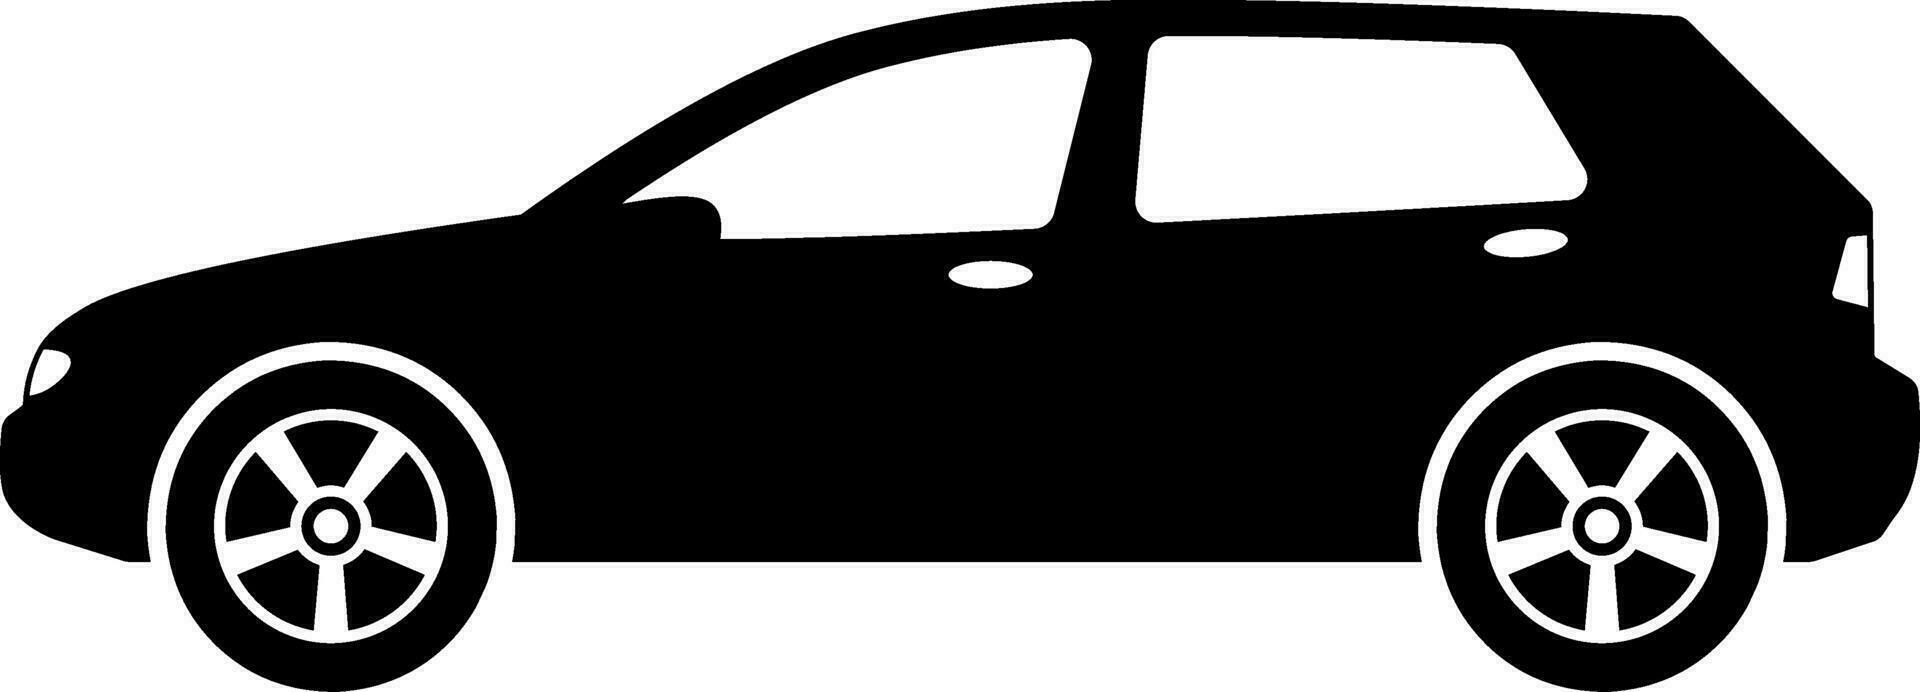 halvkombi bil ikon vektor. crossover bil silhuett för ikon, symbol eller tecken. halvkombi bil grafisk resurs för transport eller bil- vektor